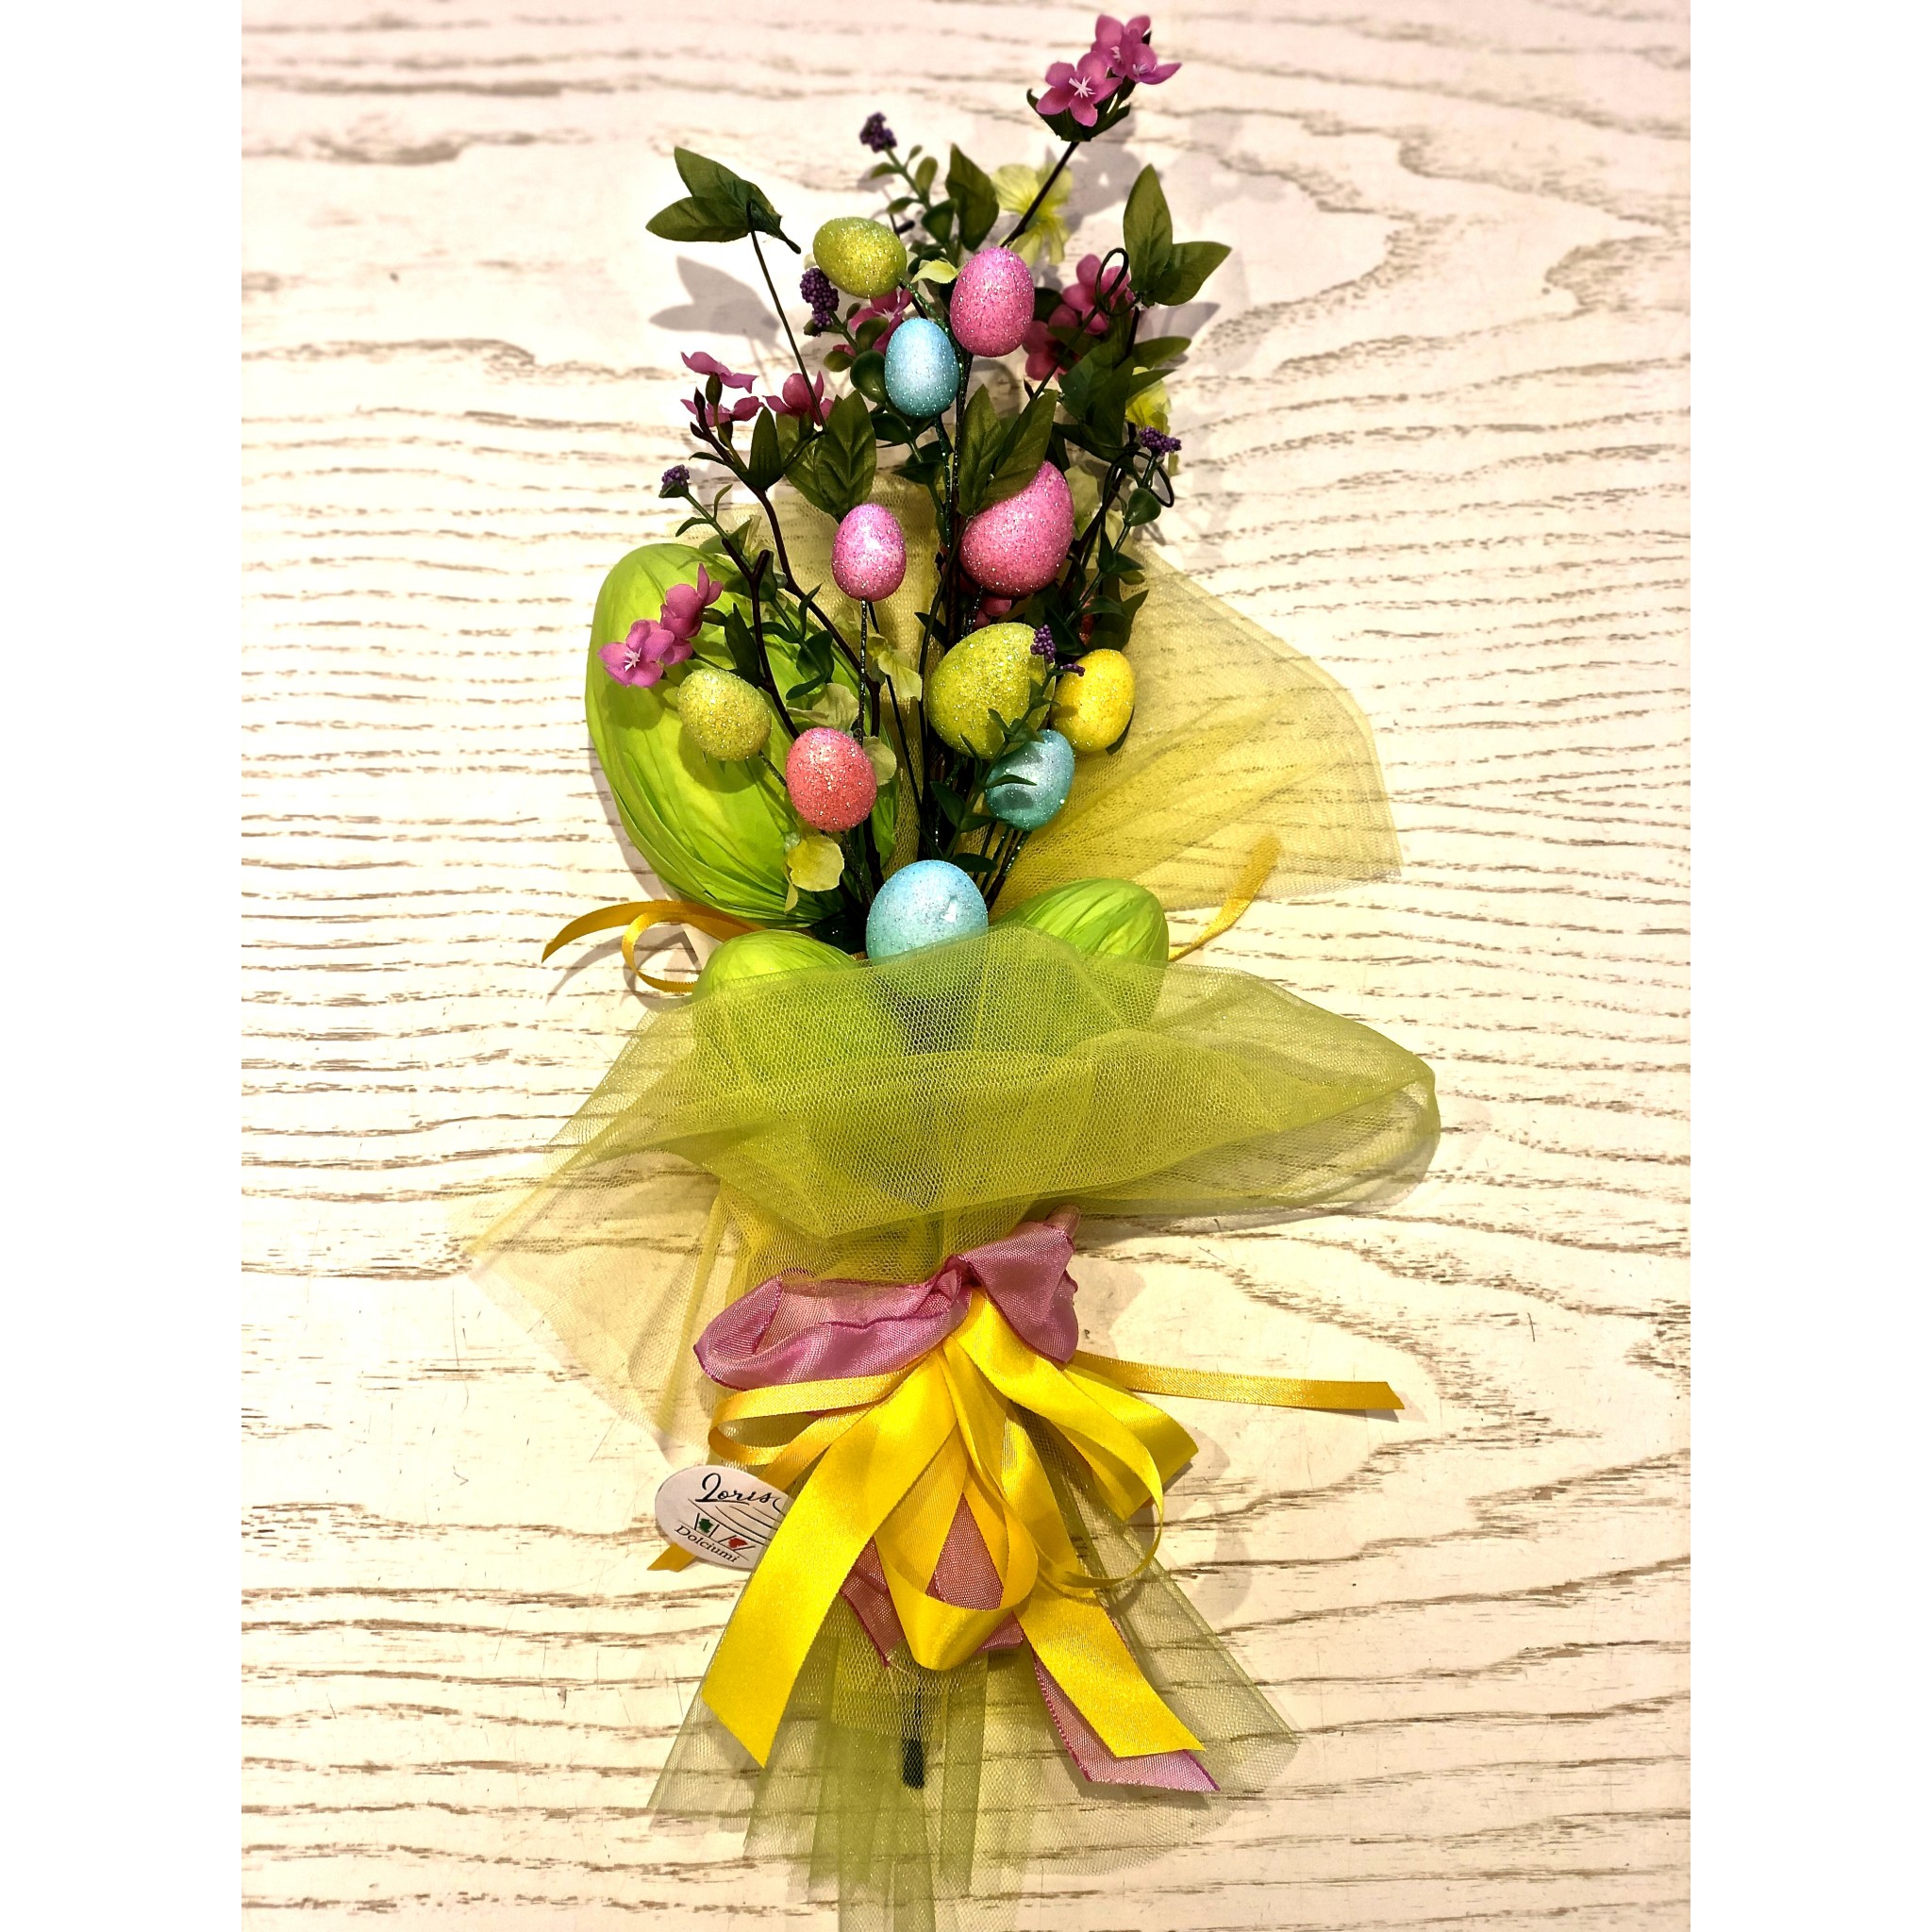 Vendita online Bouquet con fiori finti e uova di cioccolato, prodotto  dolciario prodotto e confezionato da Loris di Lugo, Ravenn